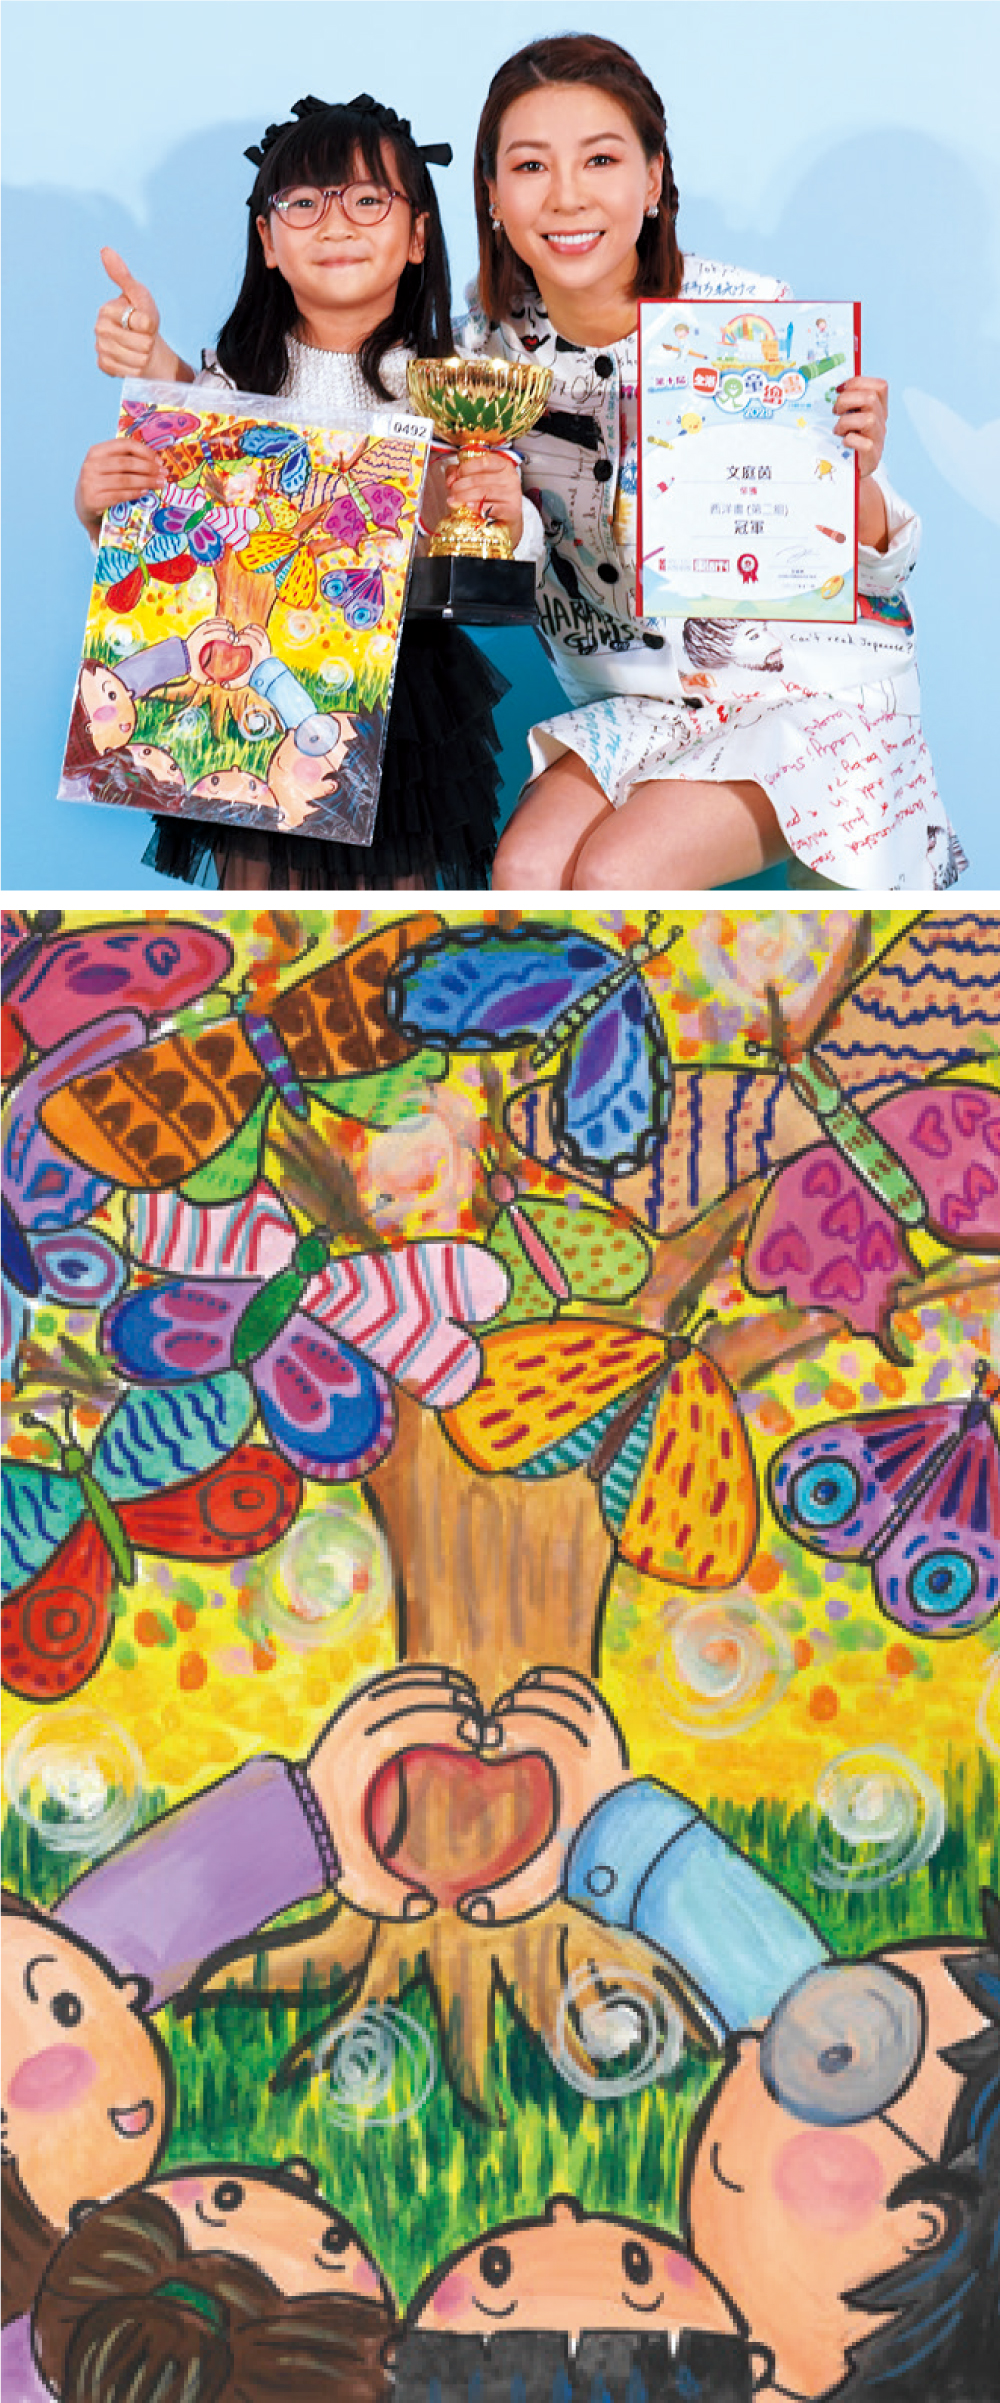 冠軍 文庭茵 - 充滿幻想色彩的蝴蝶樹下，庭茵將一家四口畫在畫紙上，更做出心心手勢，構圖用色皆盡顯家庭溫暖。